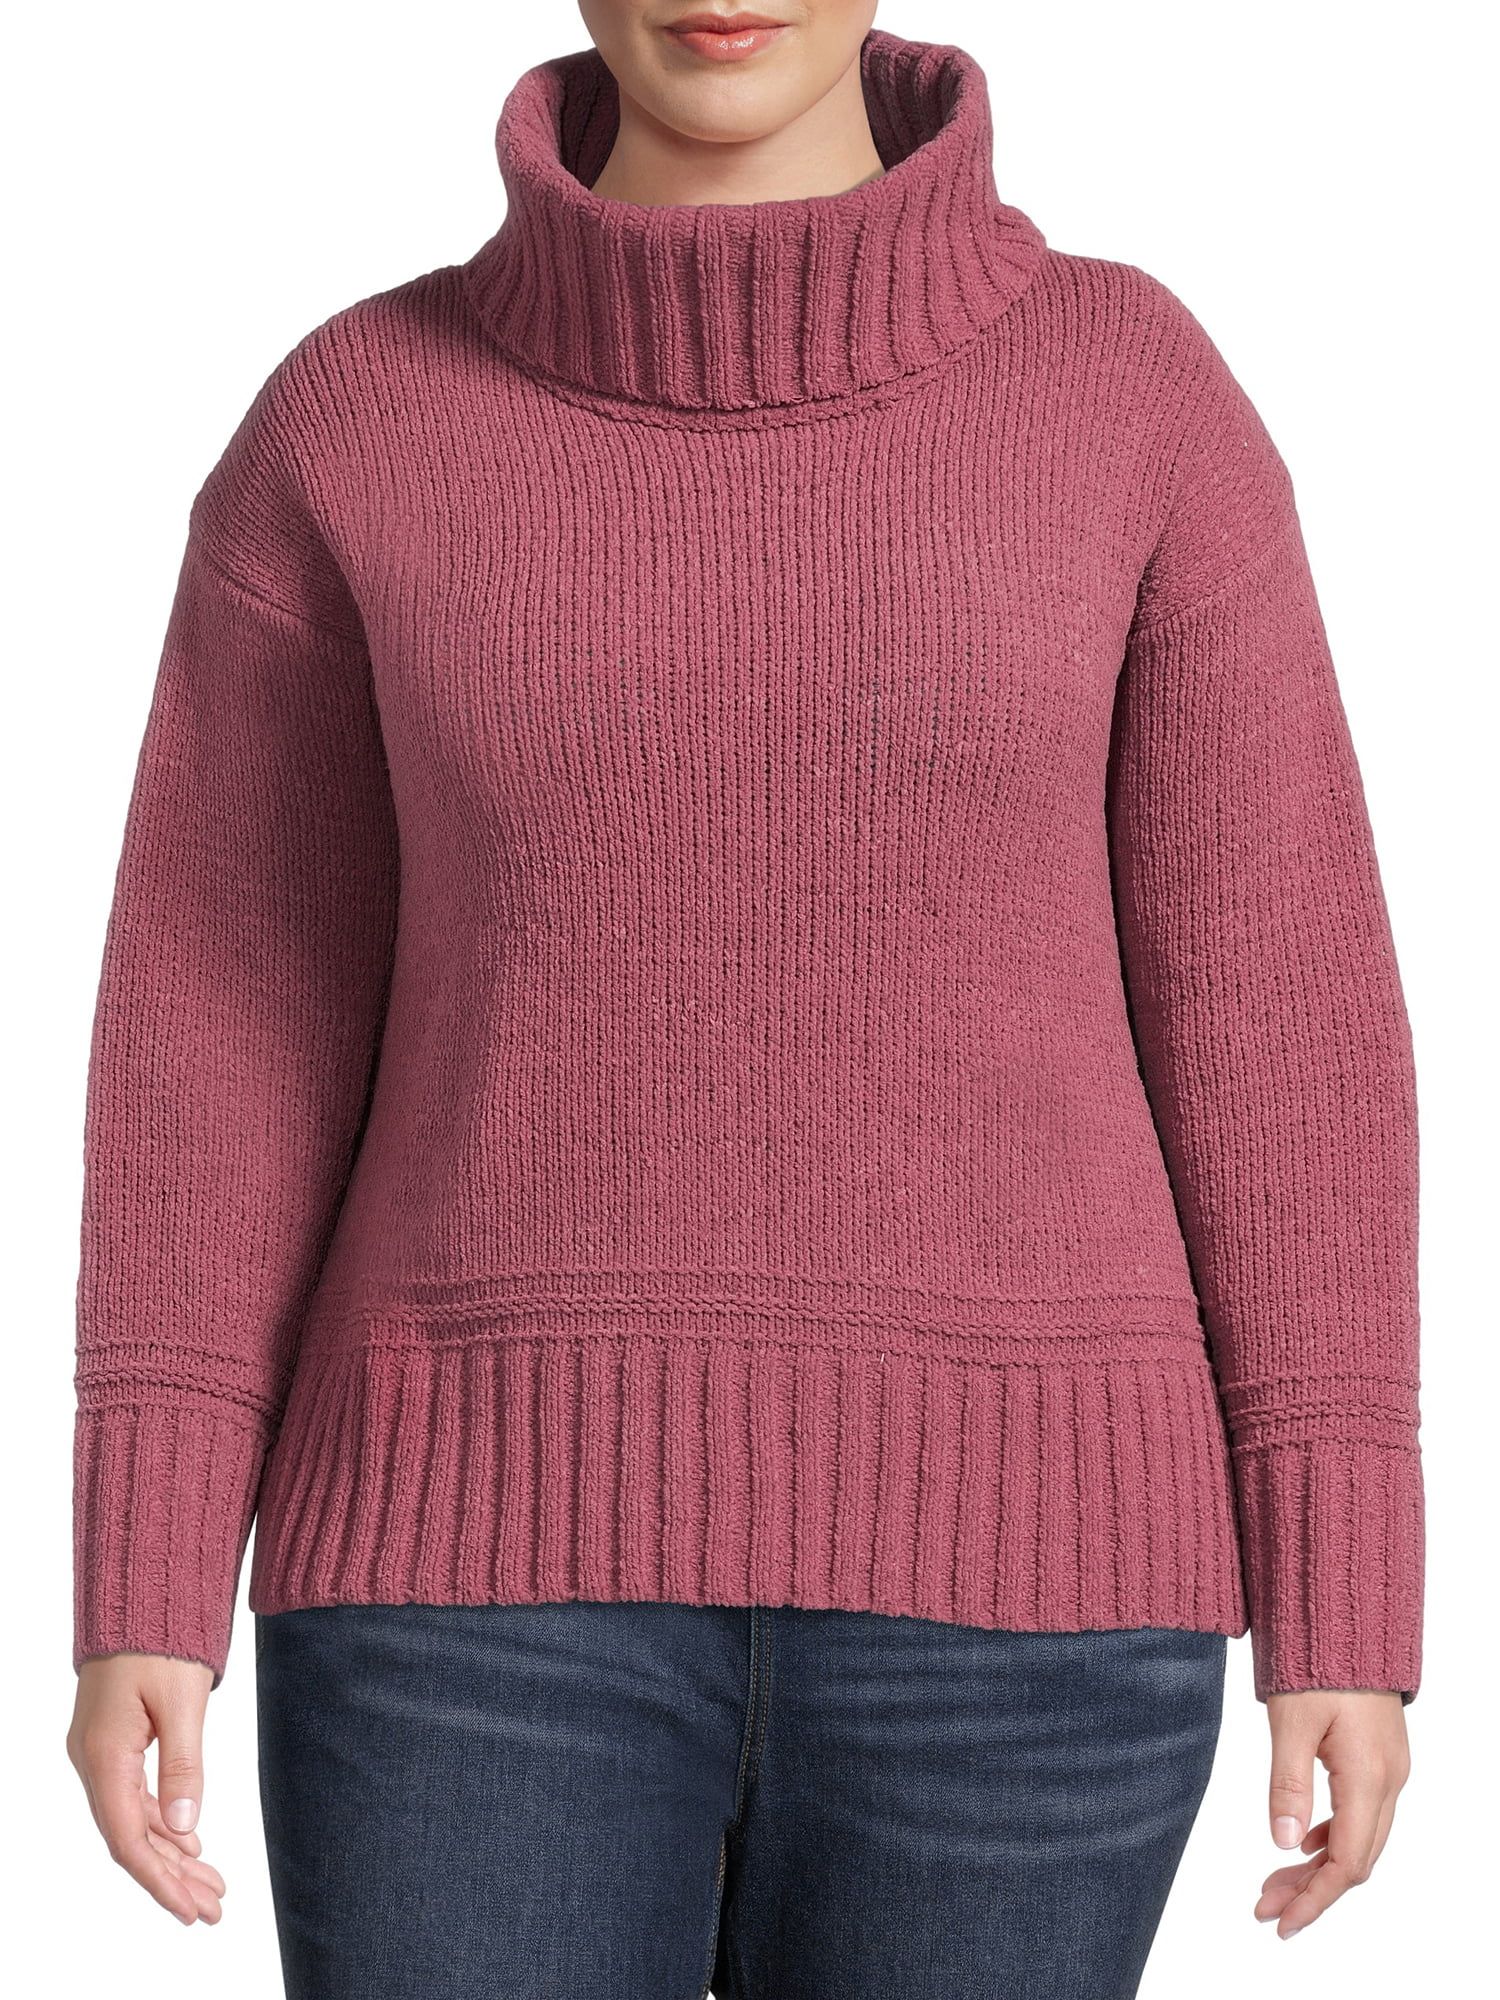 Terra & Sky Women's Plus Size Chenille Turtleneck Sweater | Walmart (US)